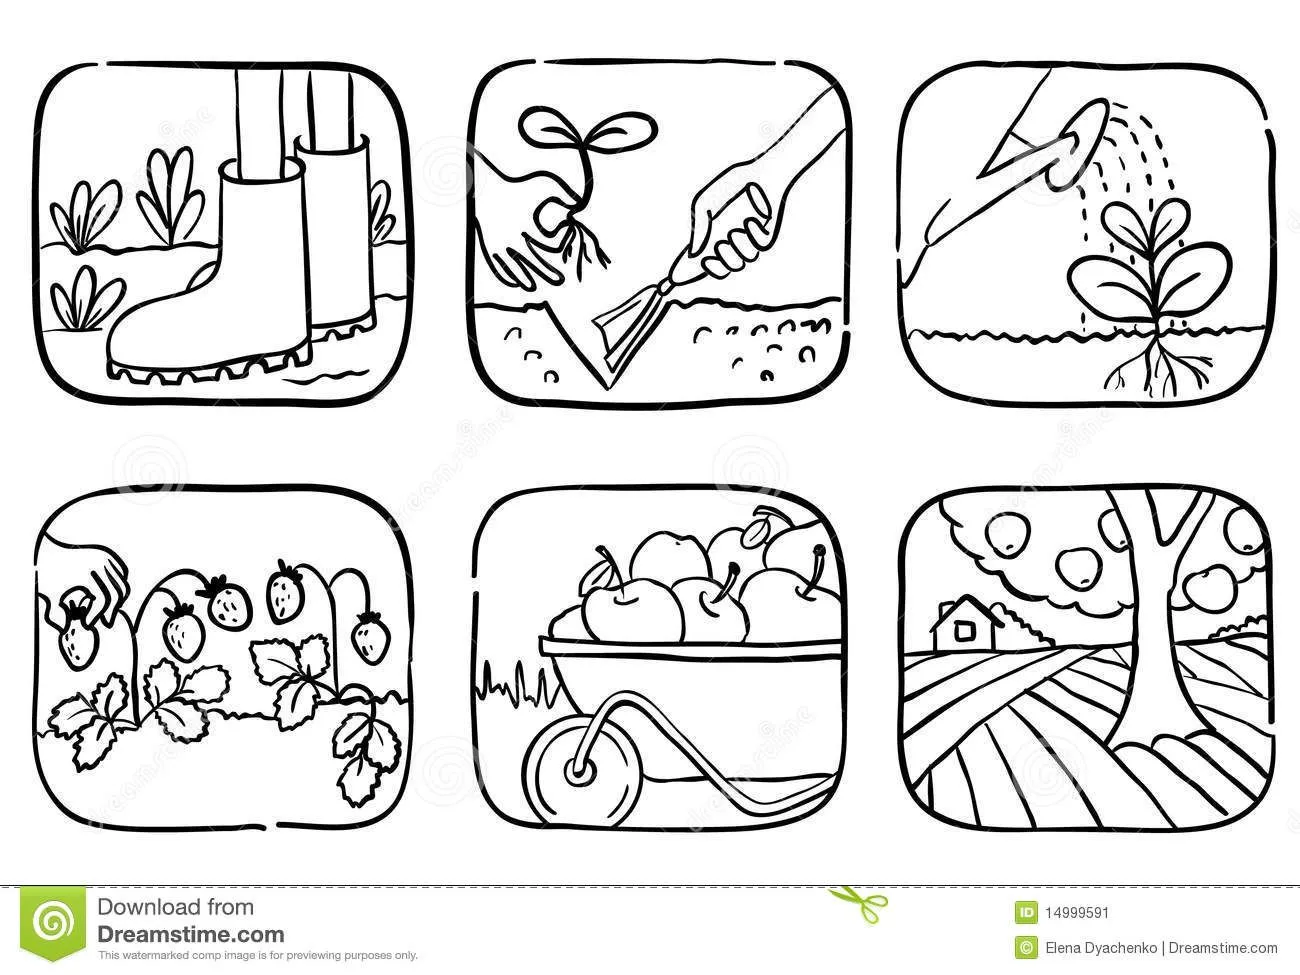 Resultado de imagen para dibujo de huerto escolar para colorear | Doodles,  Doodle icon, Vector free